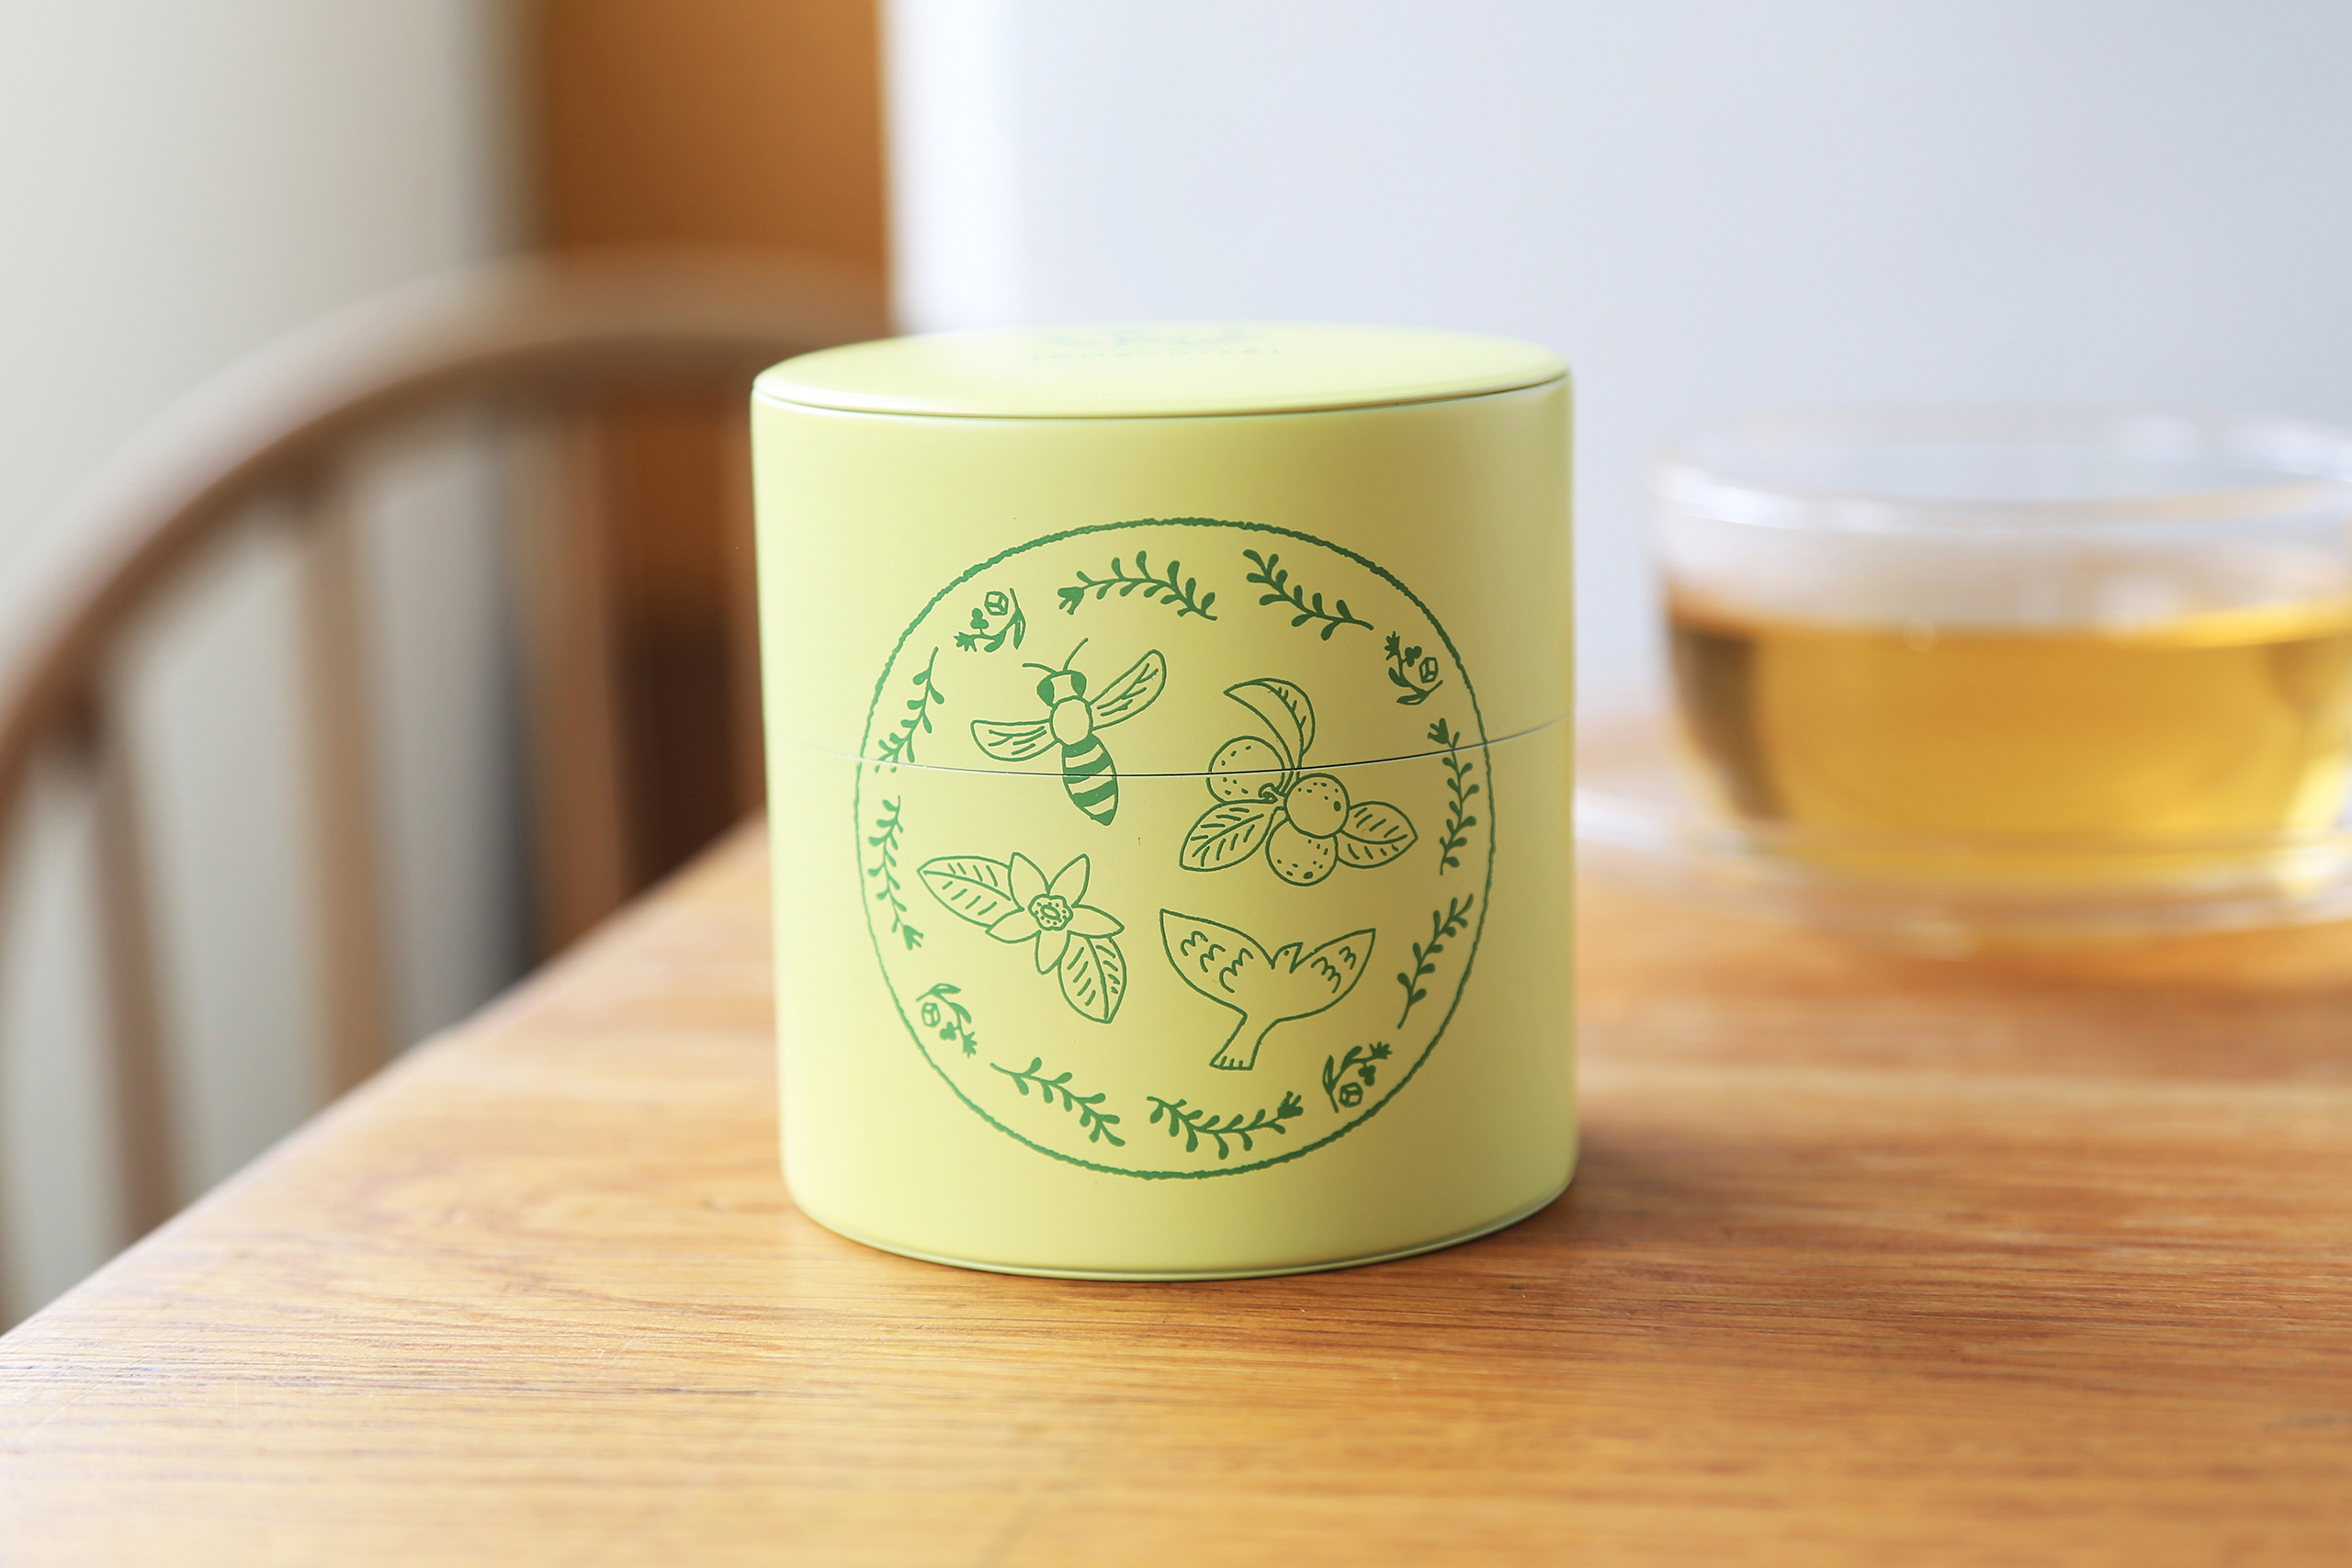 ヒラミーレモンケーキ10周年を記念して、オリジナル茶缶ができました。